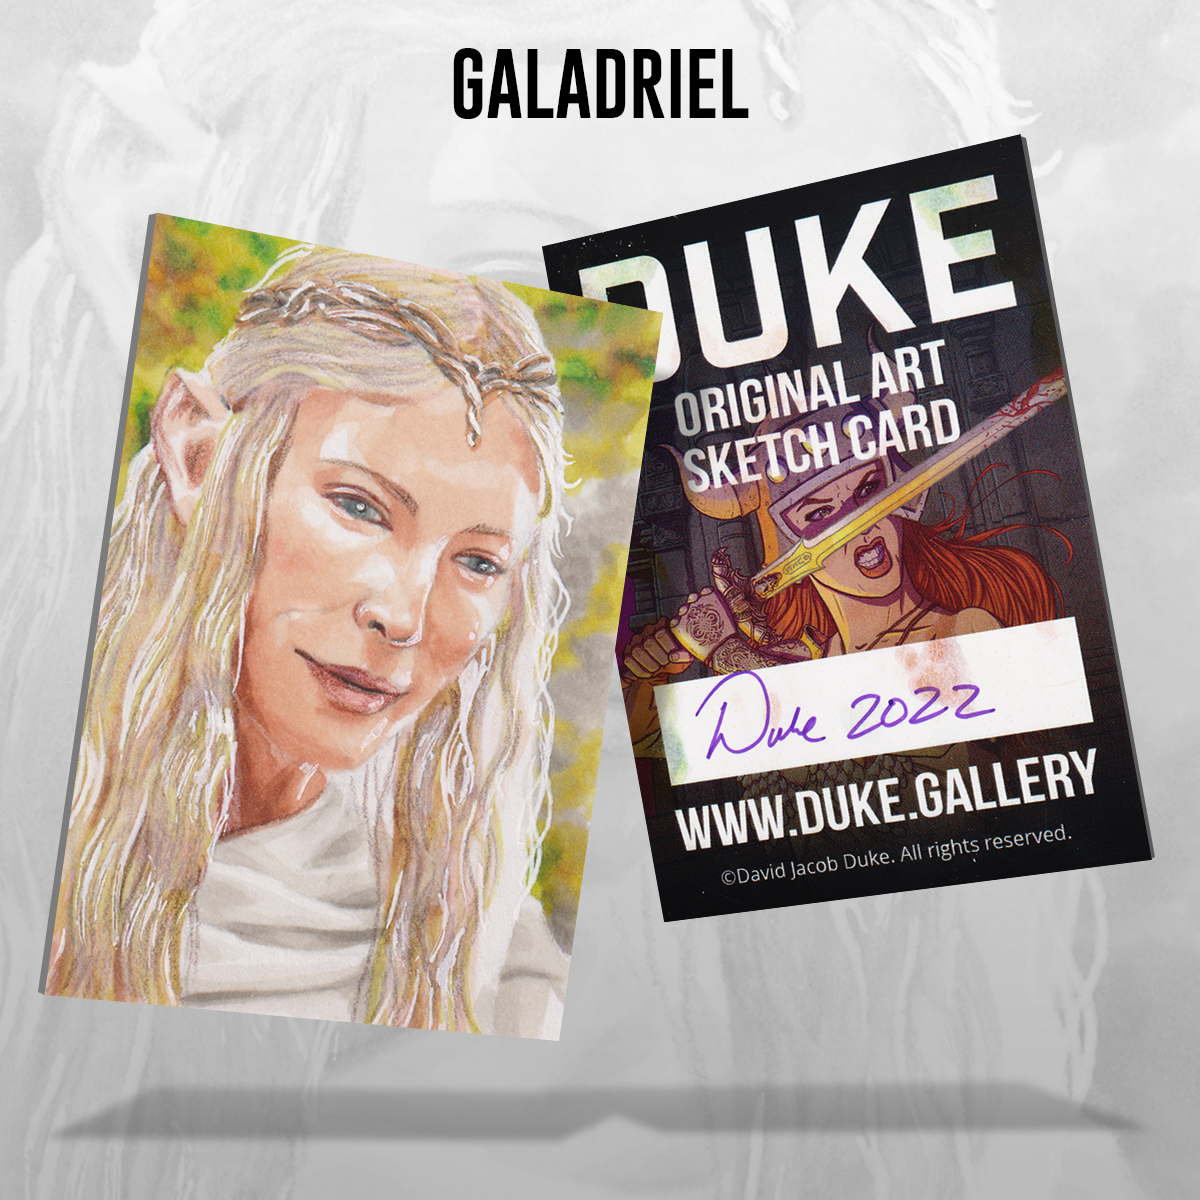 Galadriel Sketch Card by Duke